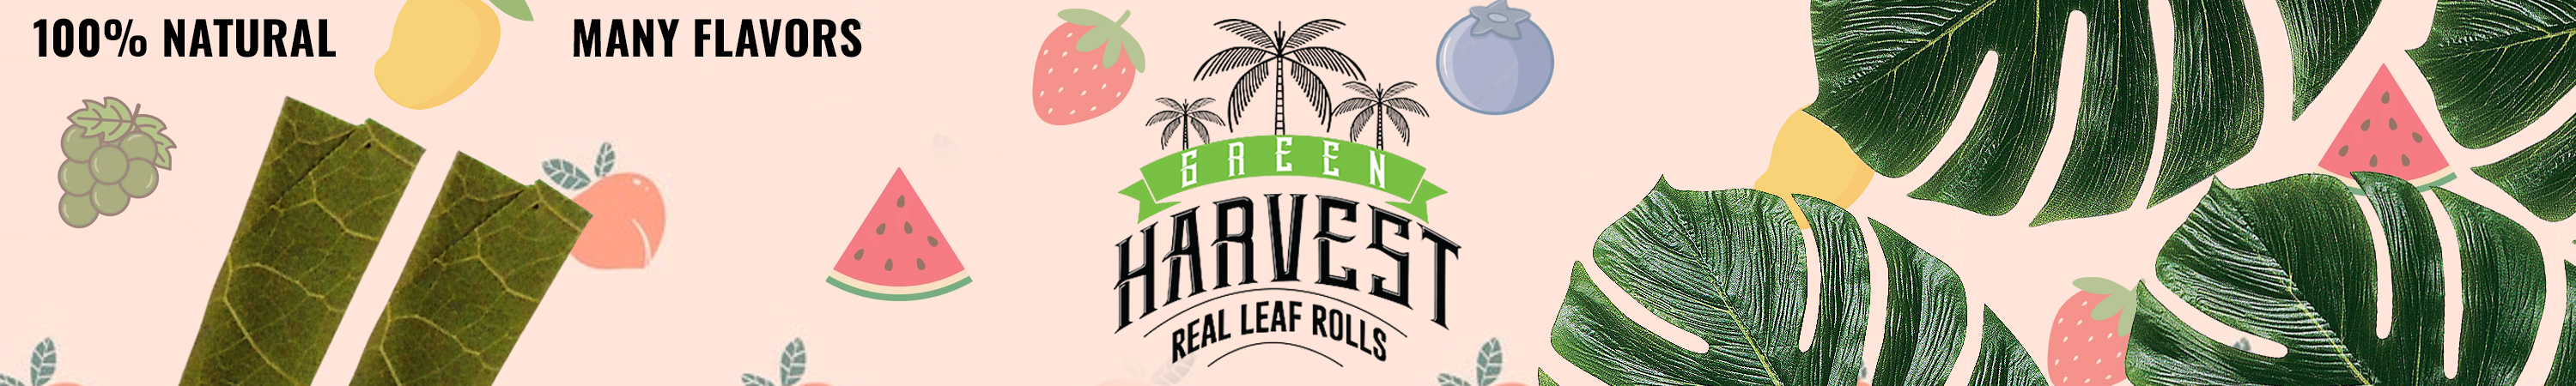 Green Harvest Real Leaf Rolls